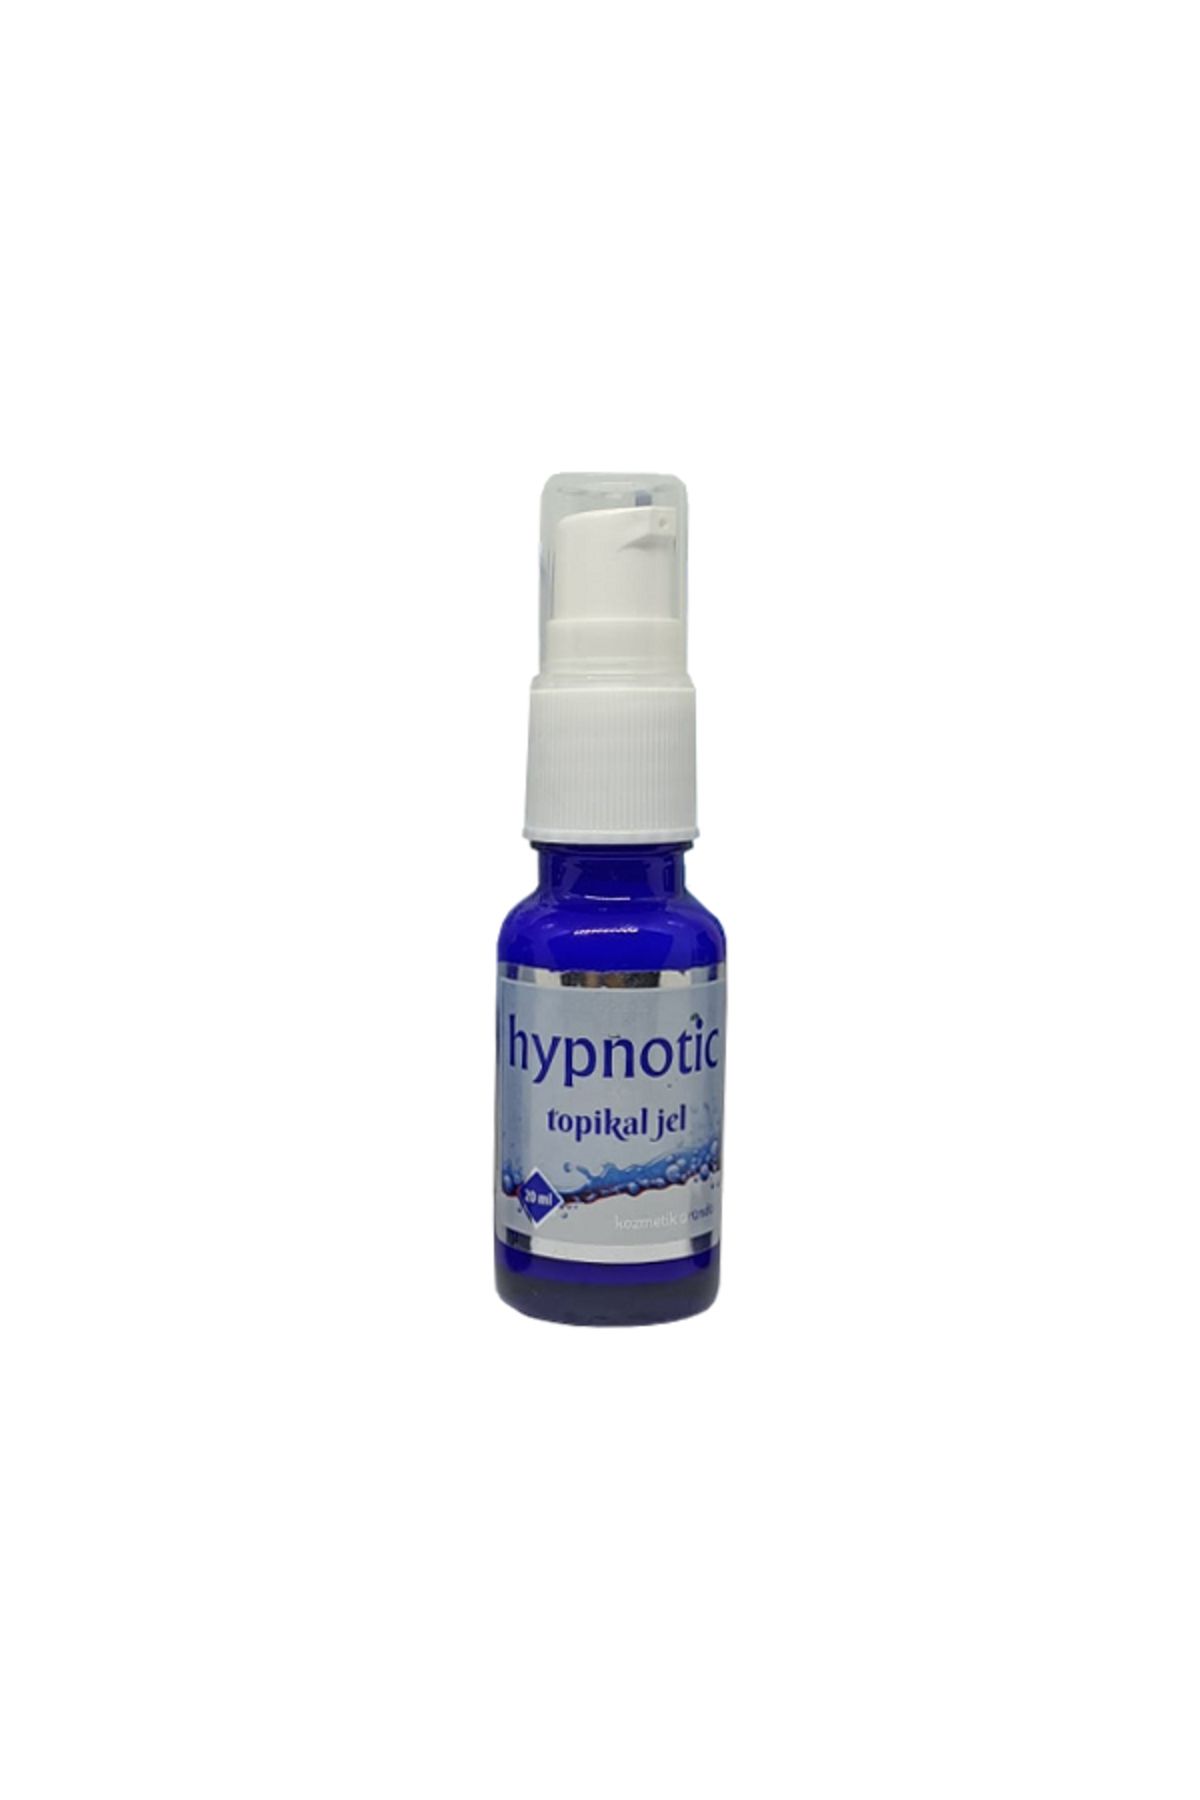 ARMONİKONYA Hypnotic Topikal Cream Topikal Krem Acı Azaltıcı Epilasyon Anestezi Kremi 20ml 1 Adet